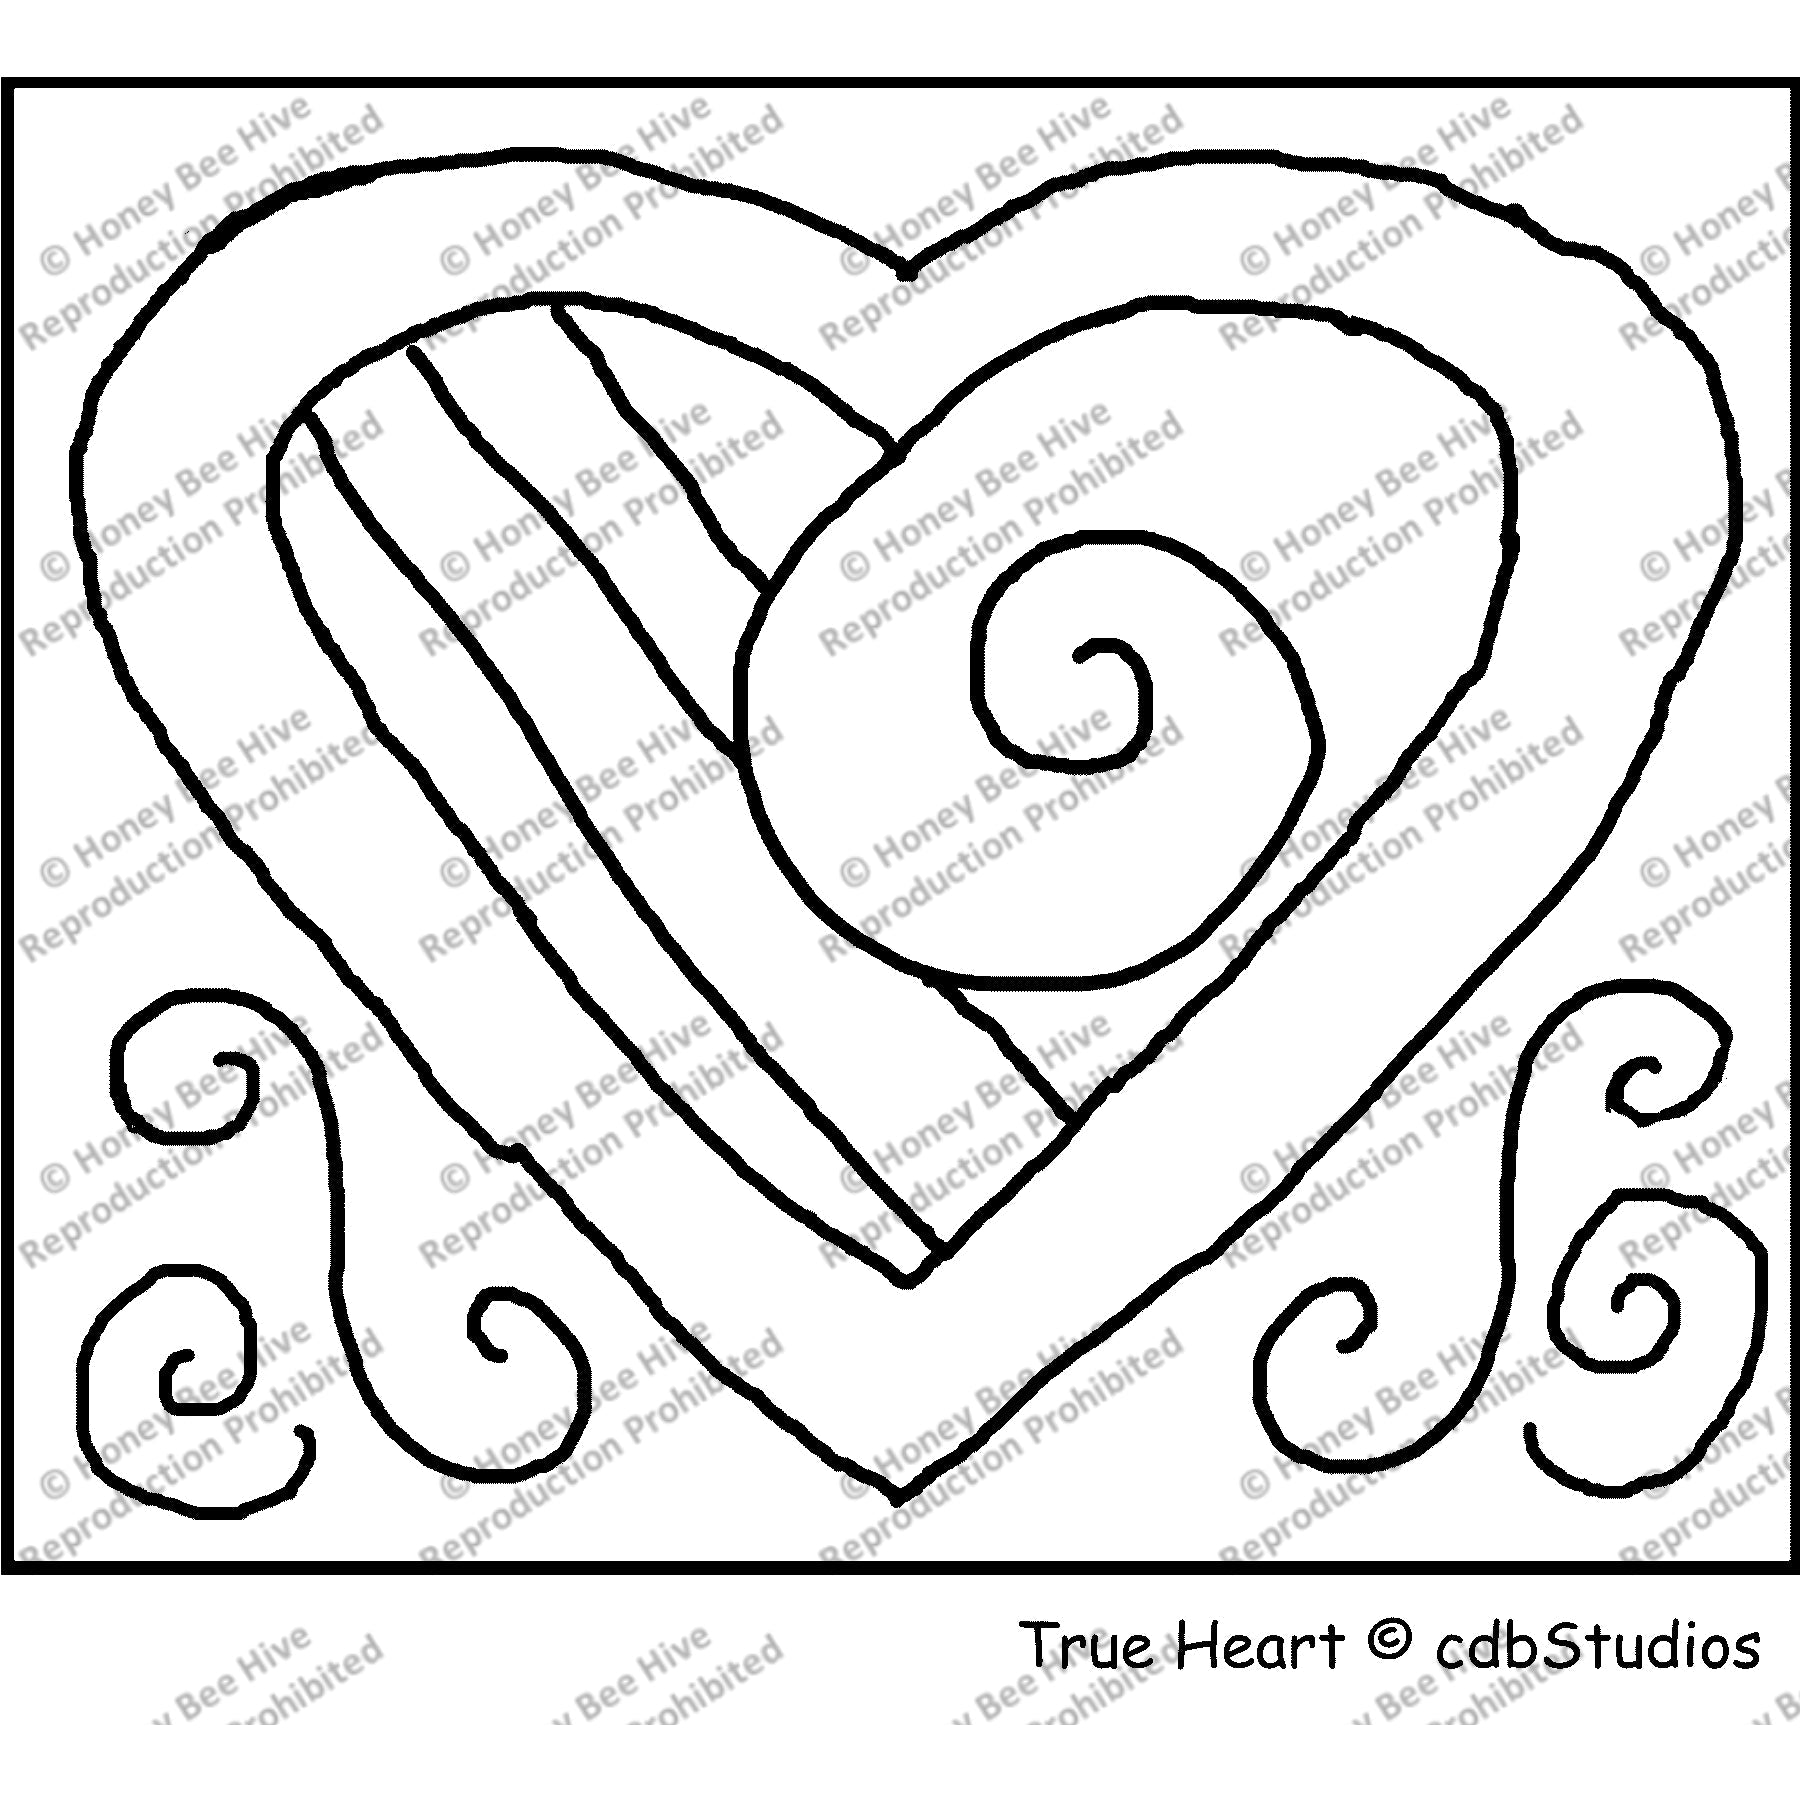 True Heart, rug hooking pattern